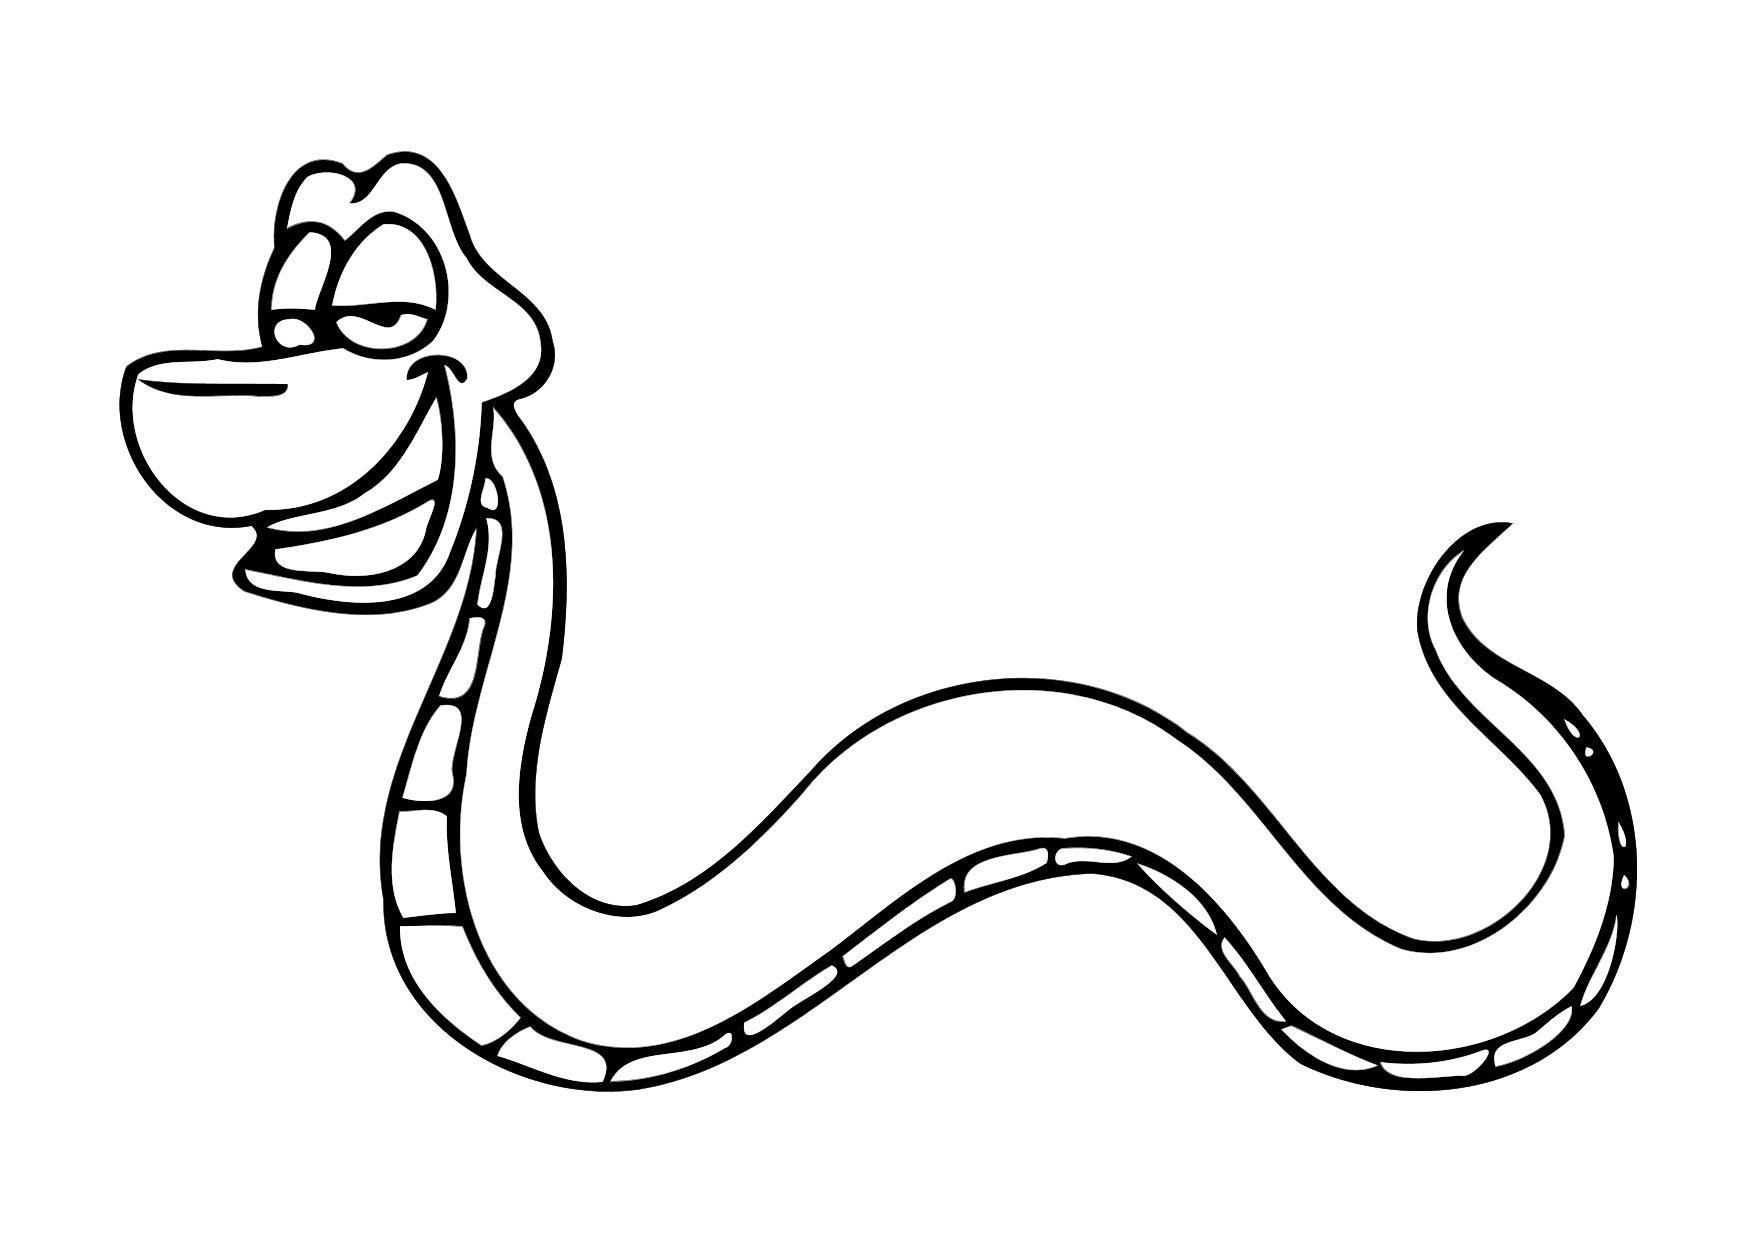 Malvorlage Schlange - Kostenlose Ausmalbilder Zum Ausdrucken. bei Schlangen Bilder Zum Ausdrucken